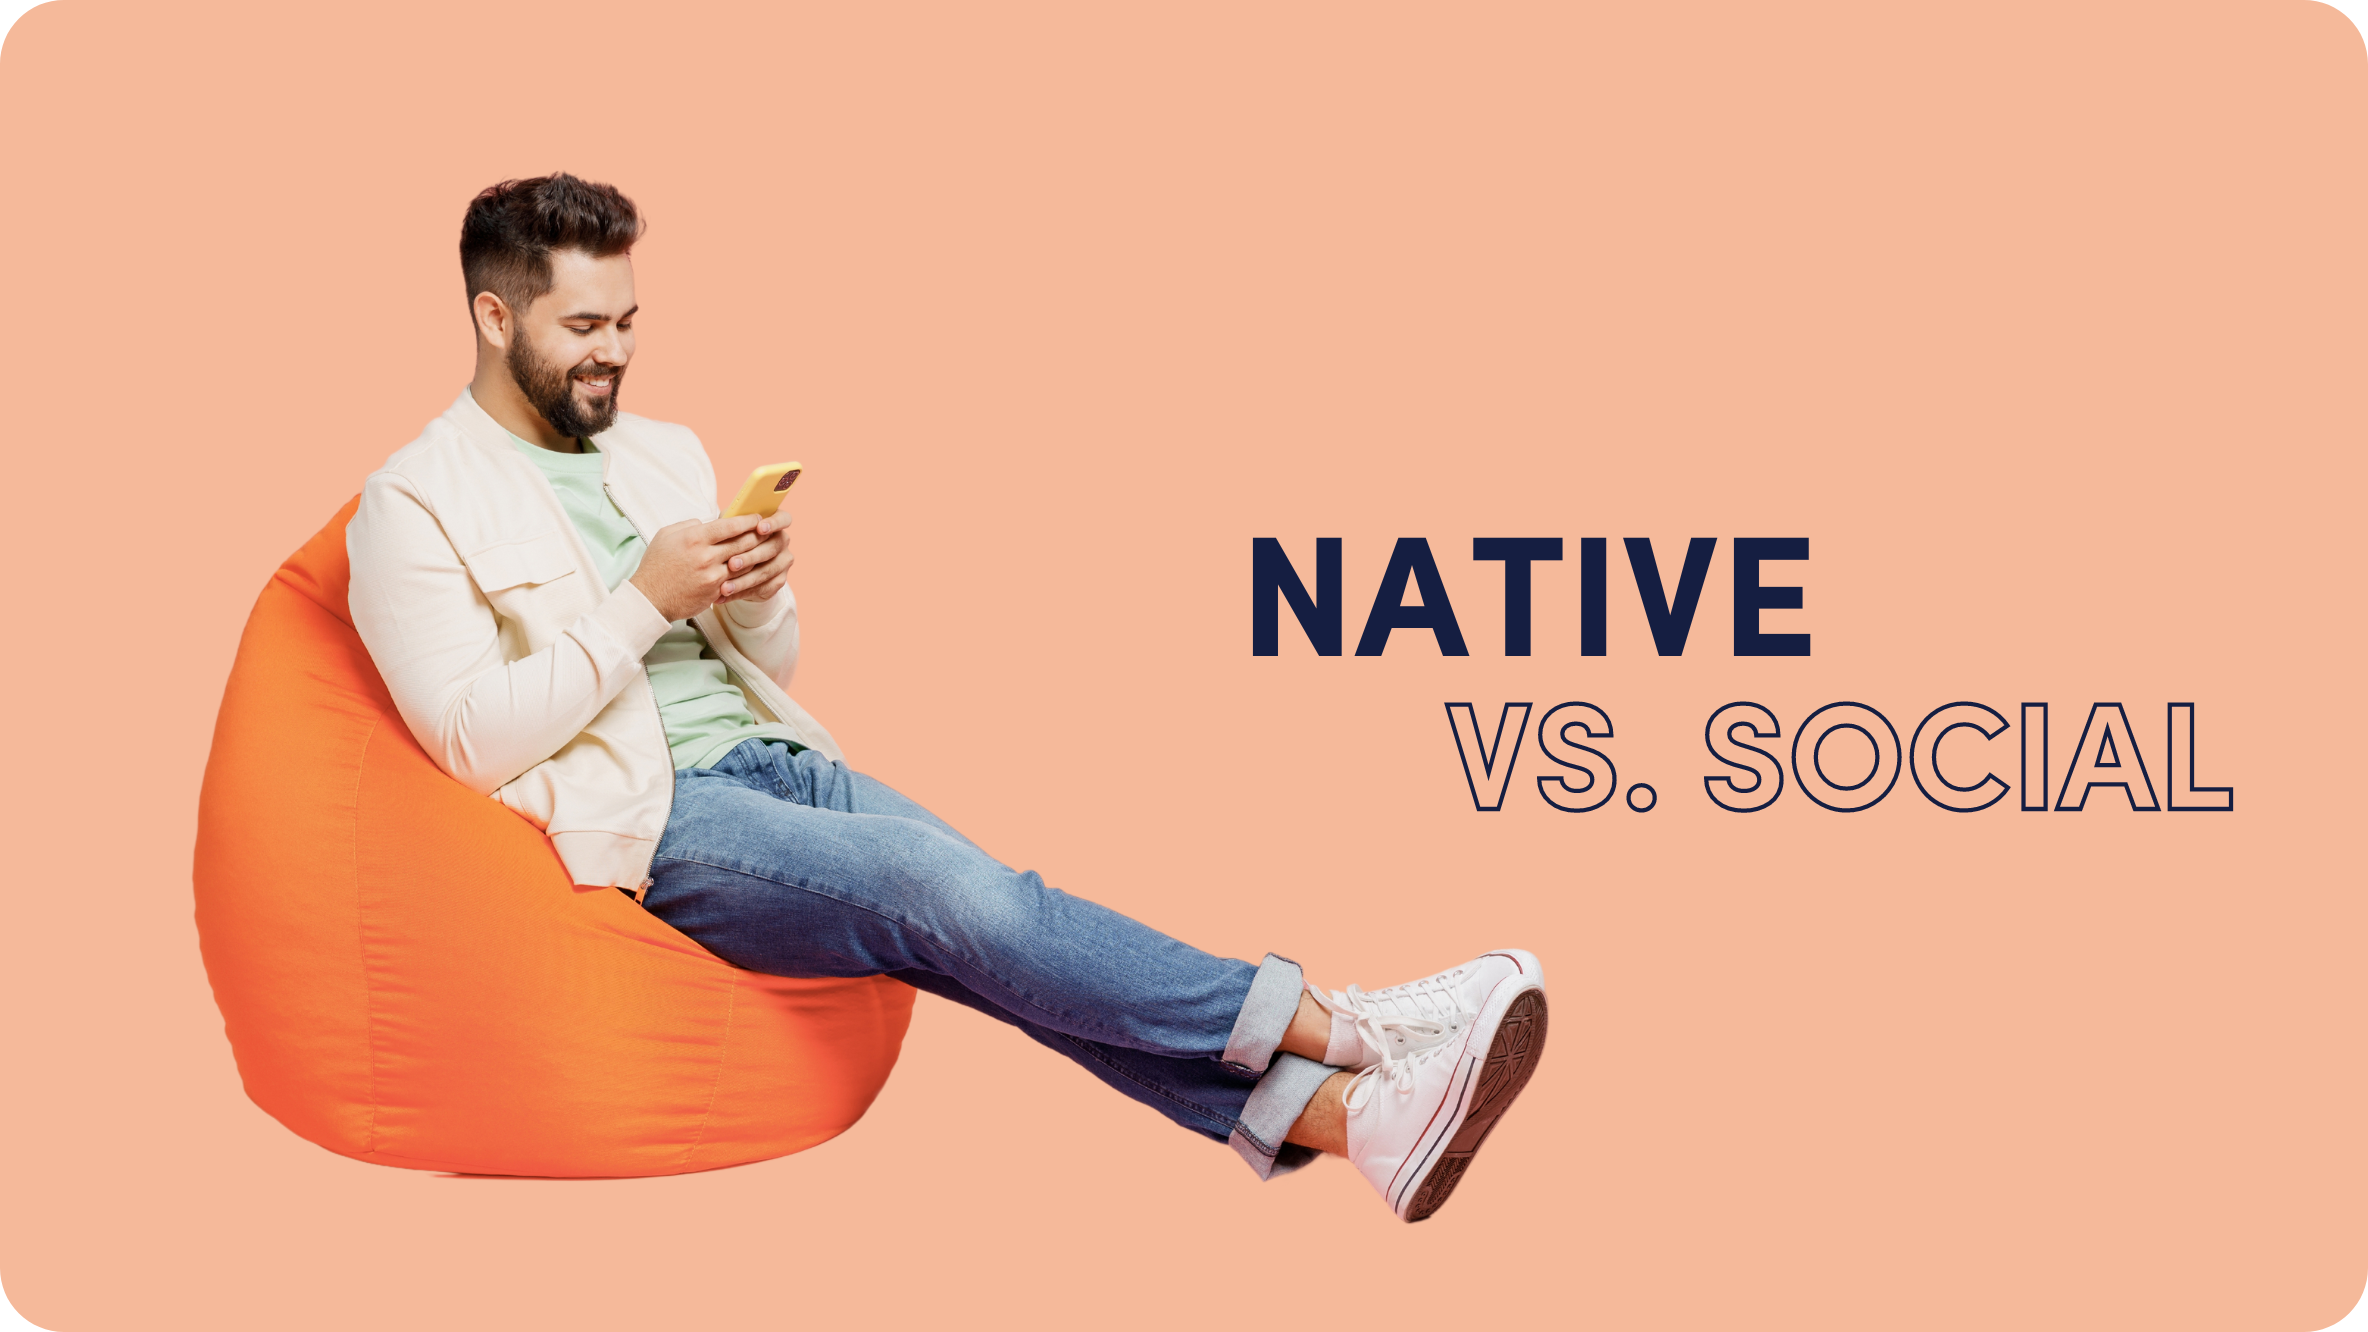 Native Advertising Vs Social Media: What Do Audiences Prefer? Outbrain-Savanta Report